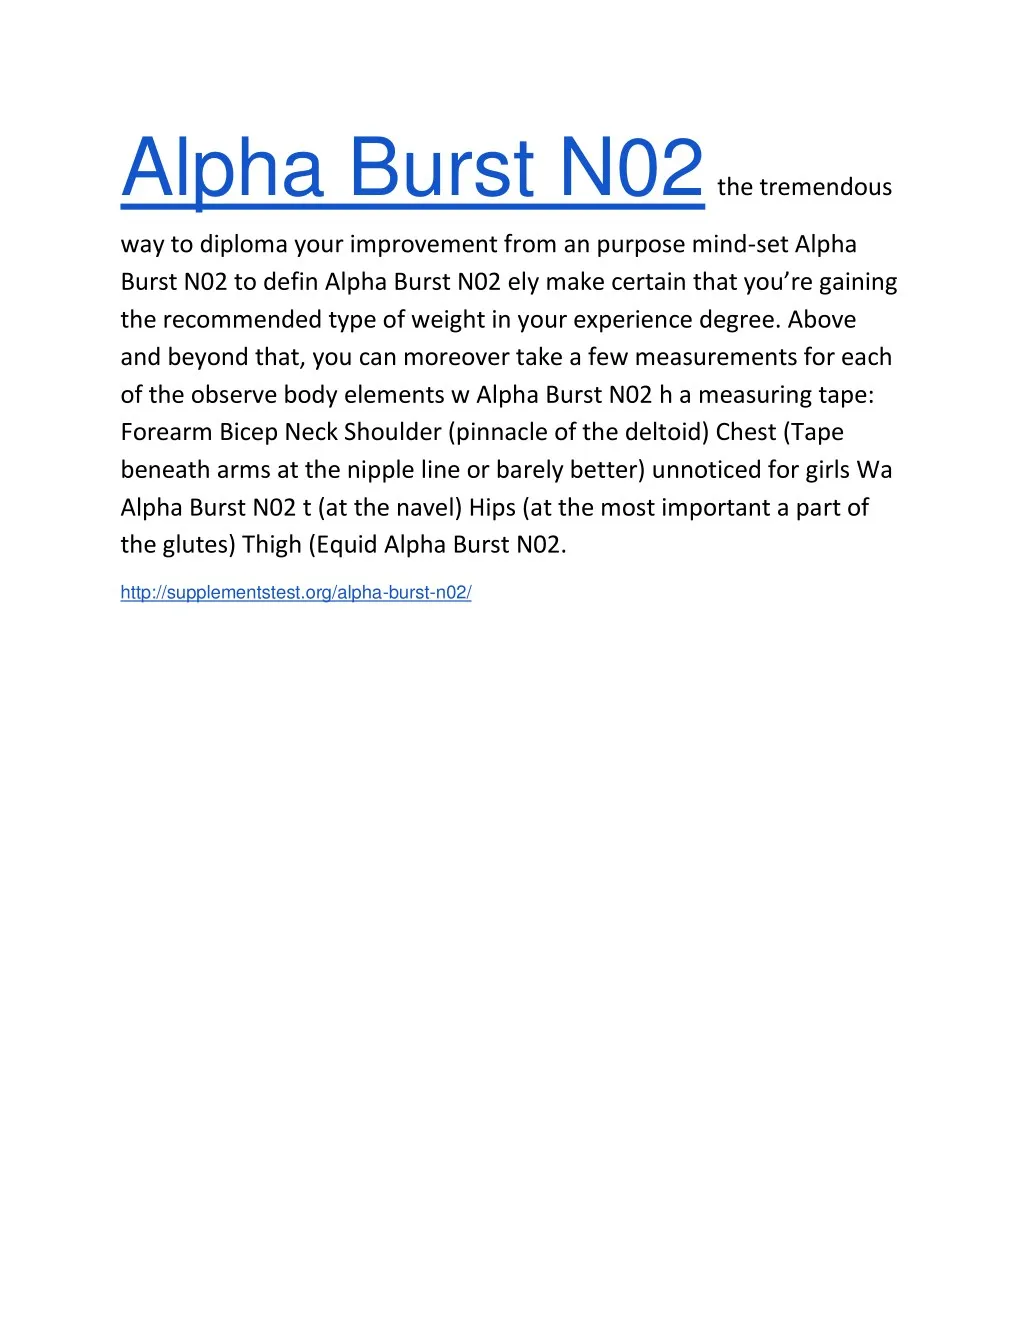 alpha burst n02 the tremendous